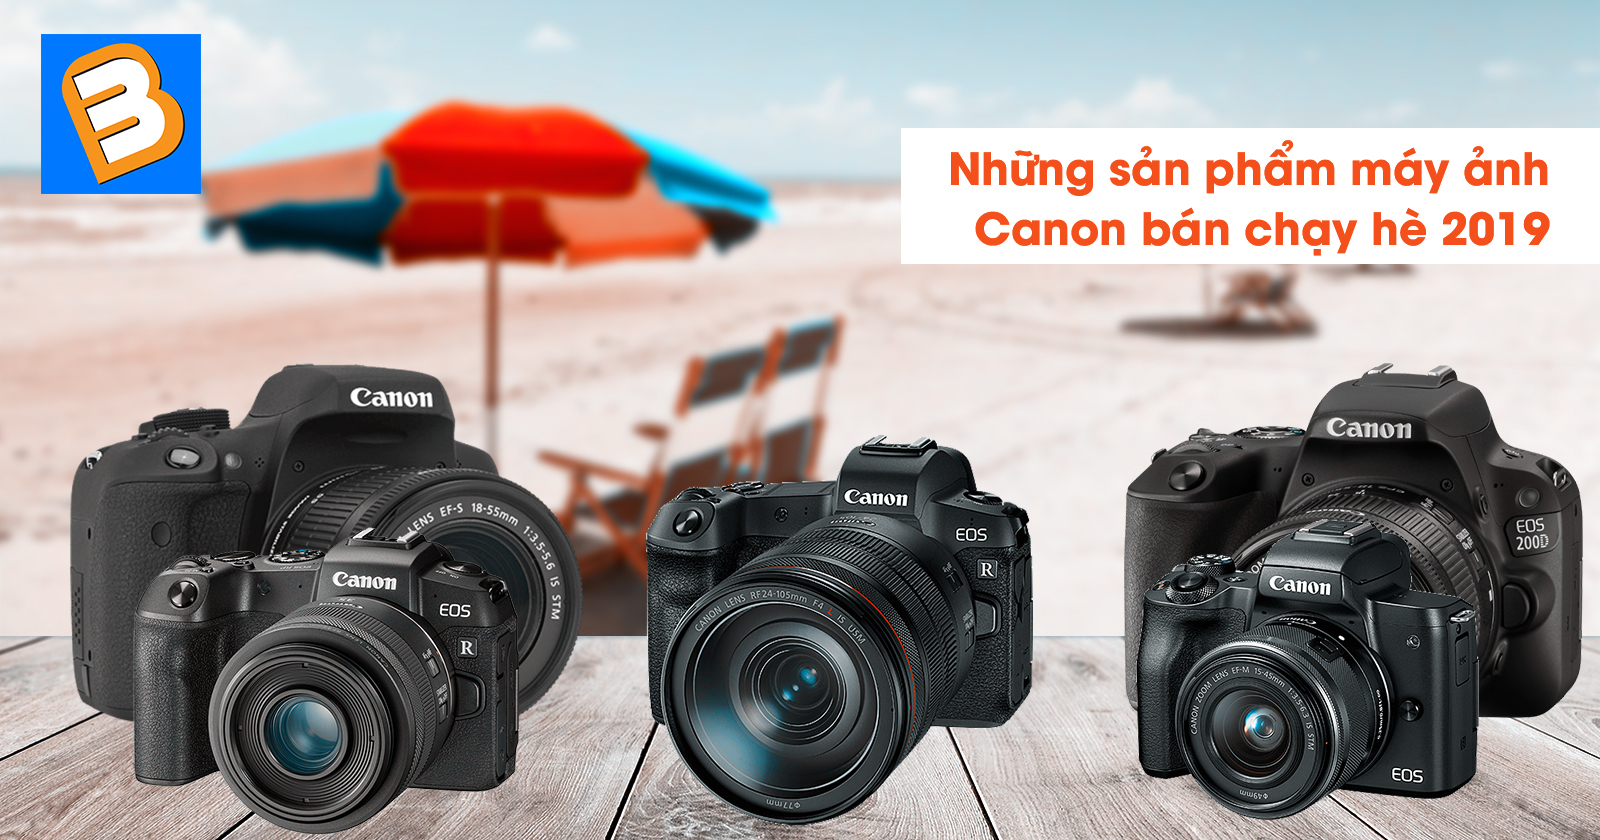 Những sản phẩm máy ảnh canon bán chạy hè 2019